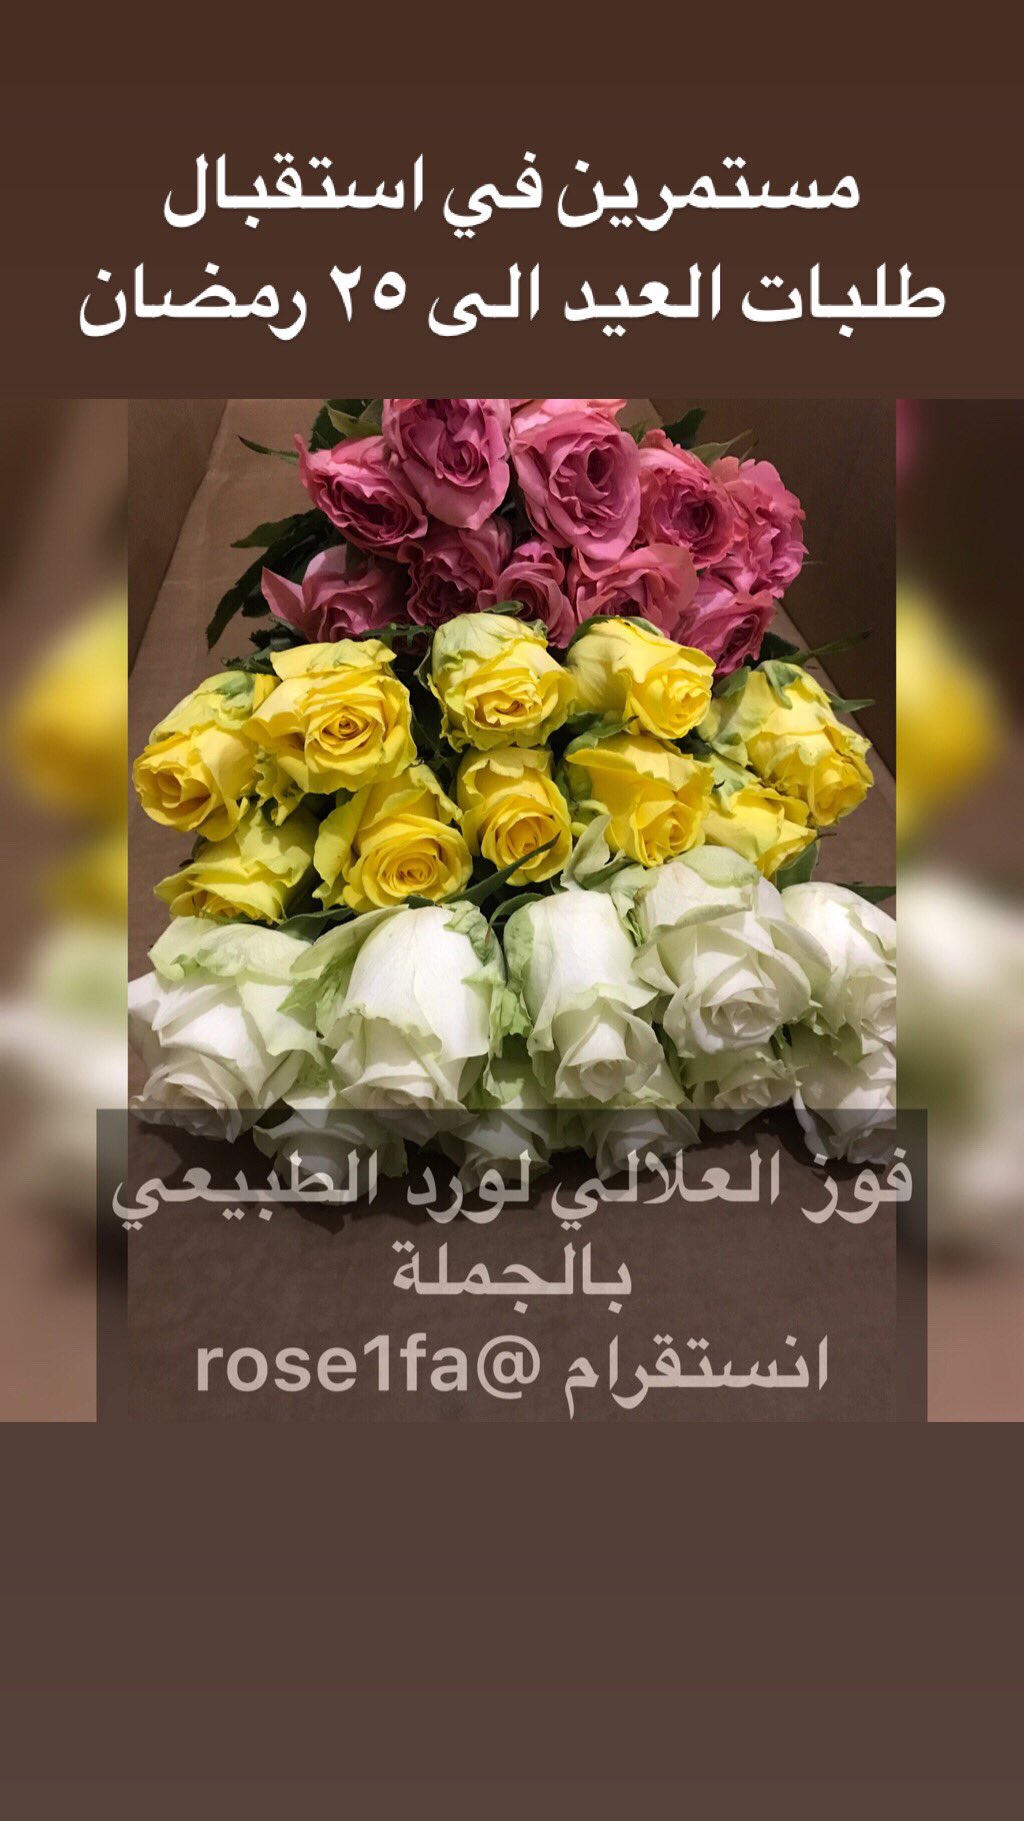 ورد بالجملة الرياض rose1fa twitter